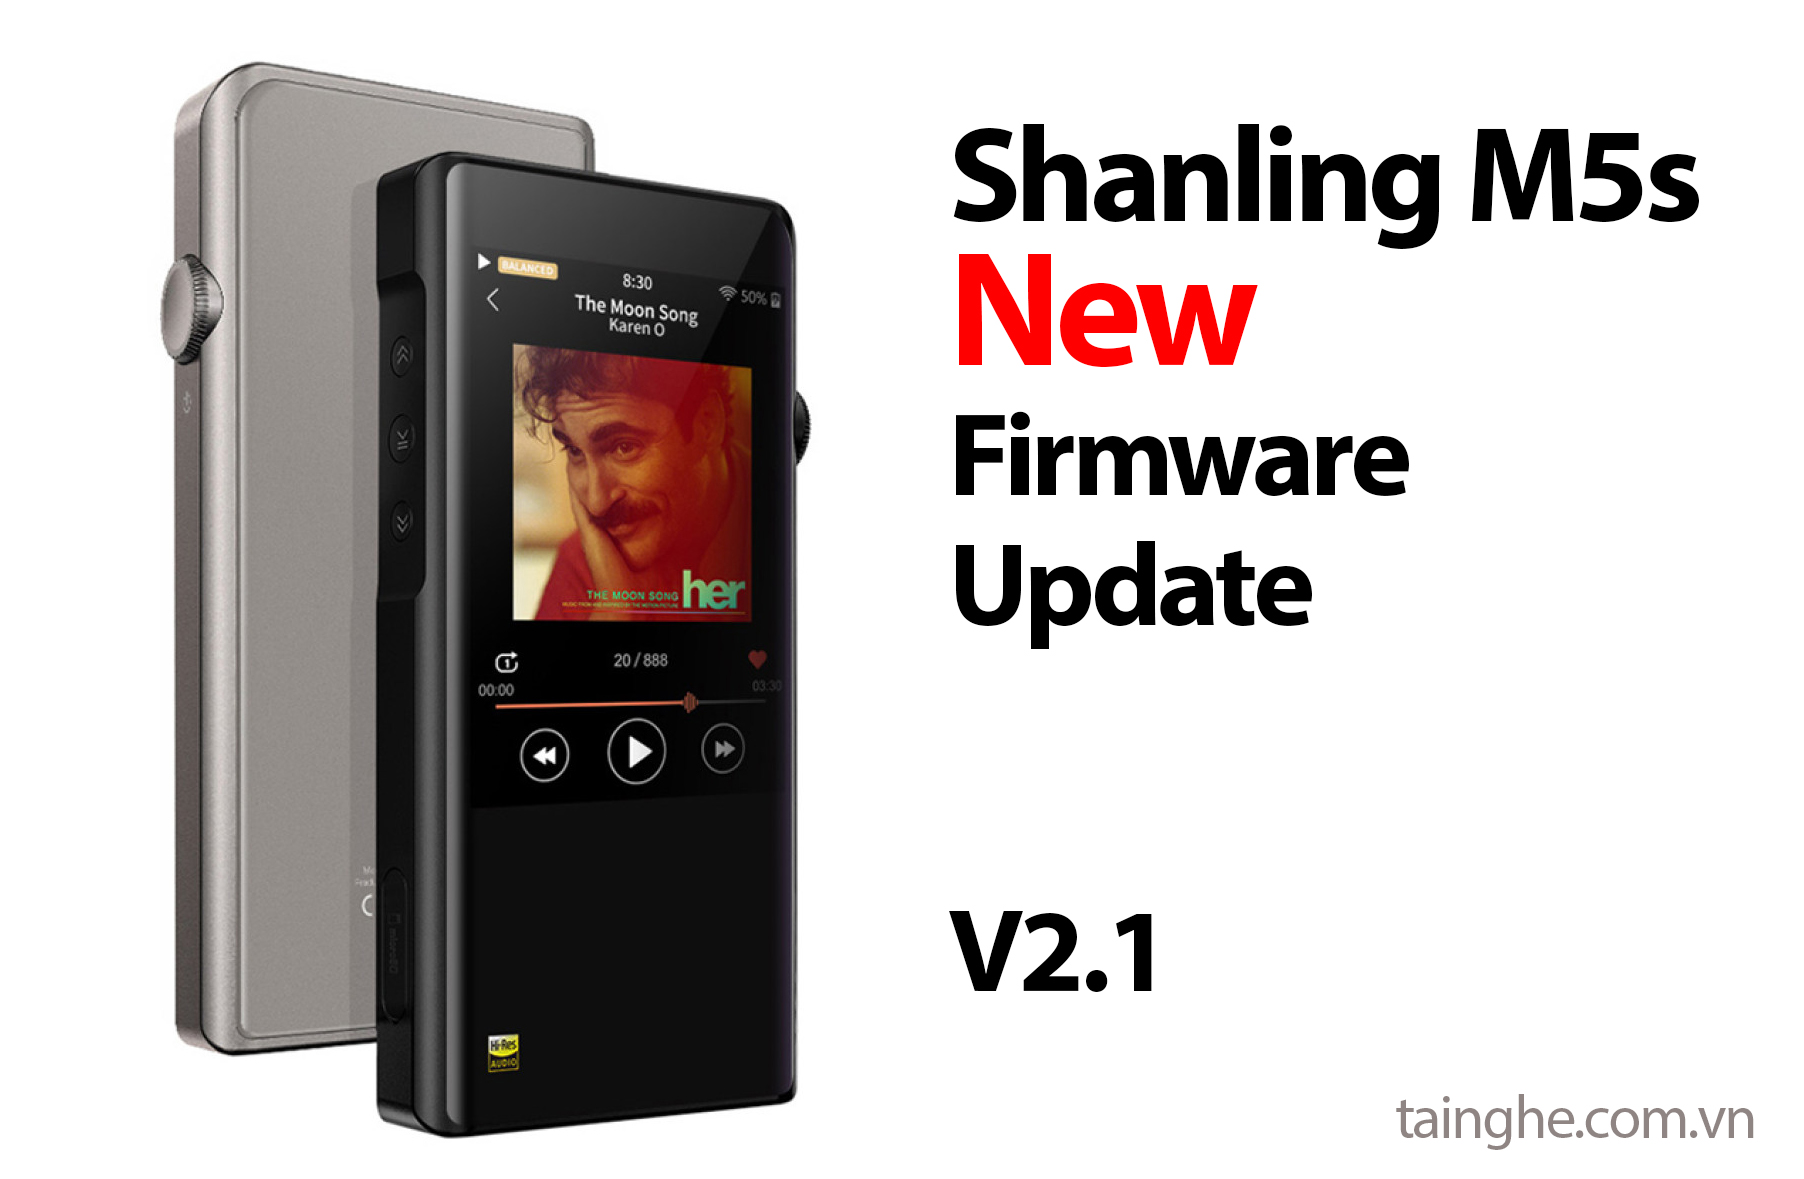 Shanling M5s cập nhật firmware mới V2.1